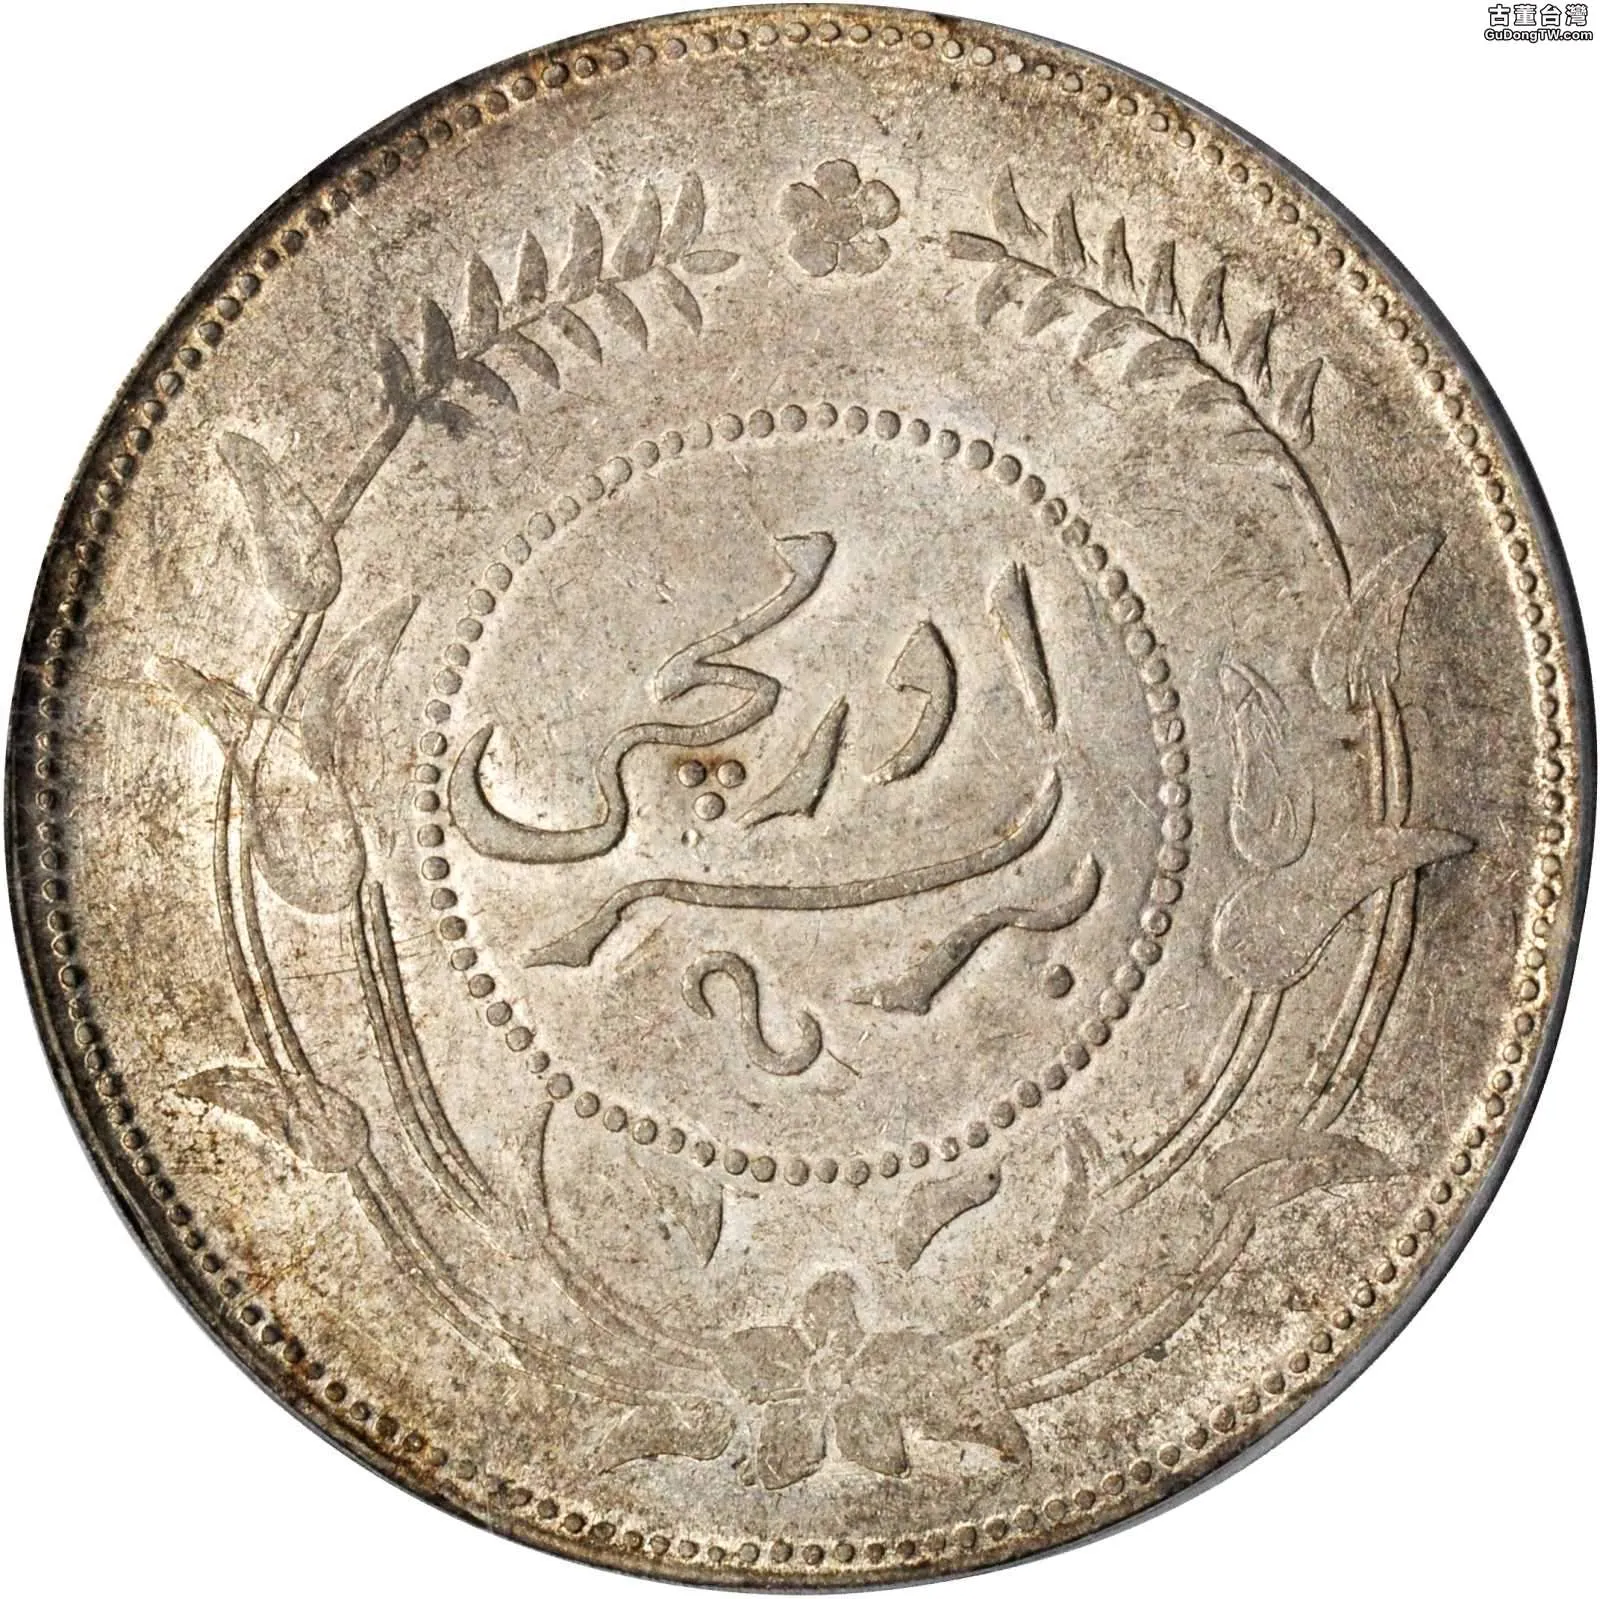 新疆迪化一兩銀幣鑄造發行歷史及成交價格